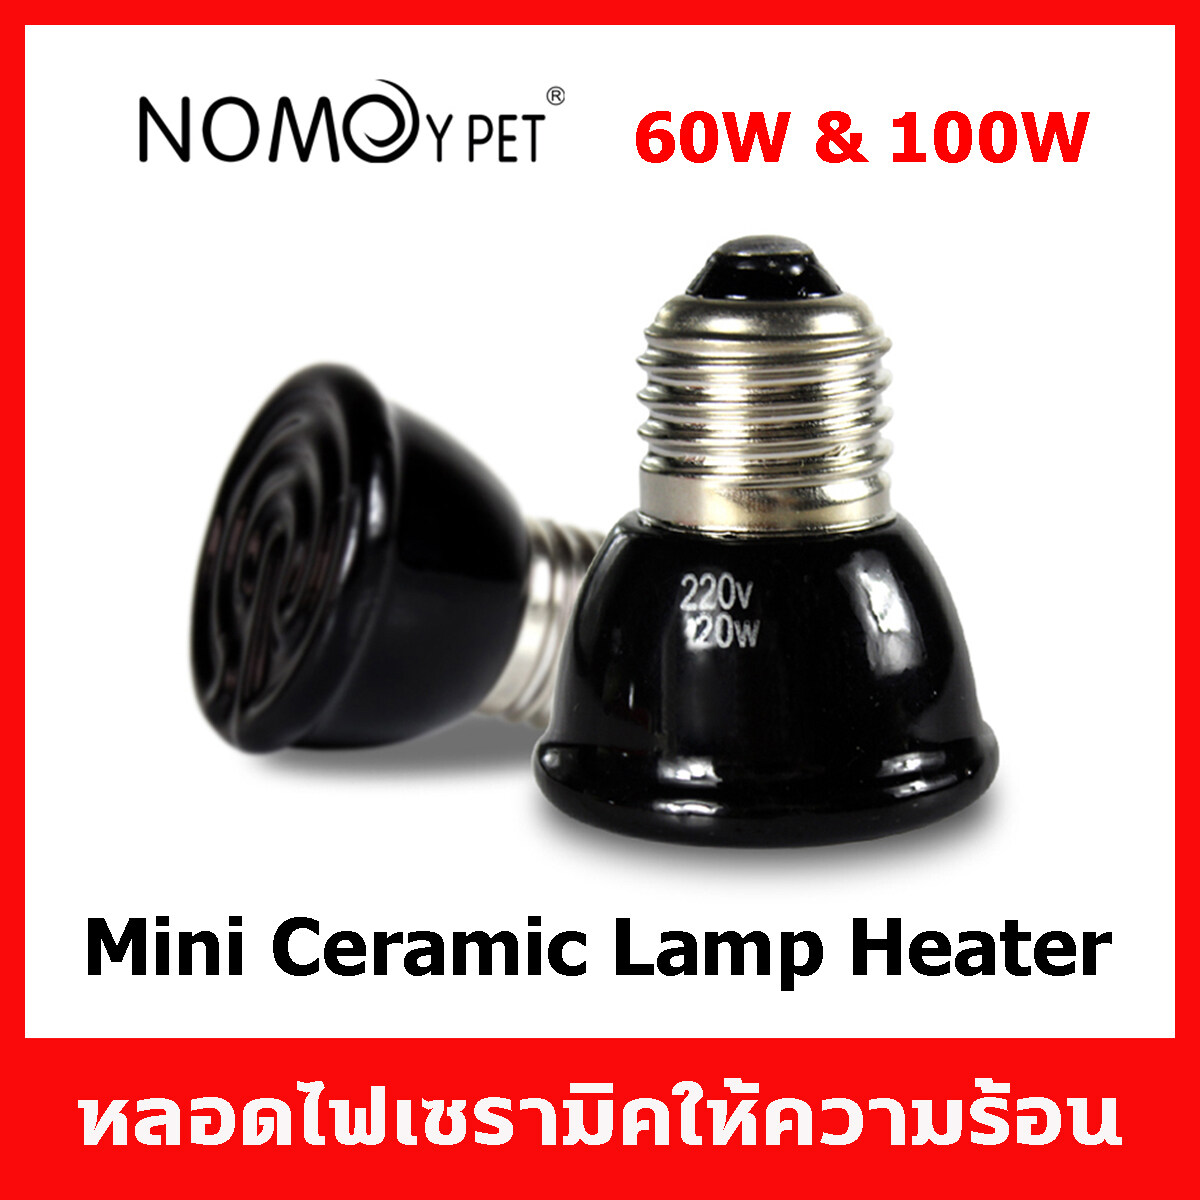 หลอดไฟ มินิ เซรามิค หลอดให้ความร้อนสำหรับสัตว์เลี้ยงทุกชนิด ขั้ว E27 สีดำ 60W, 80W และ 100W Nomoy Pet Mini Ceramic Lamp Heater